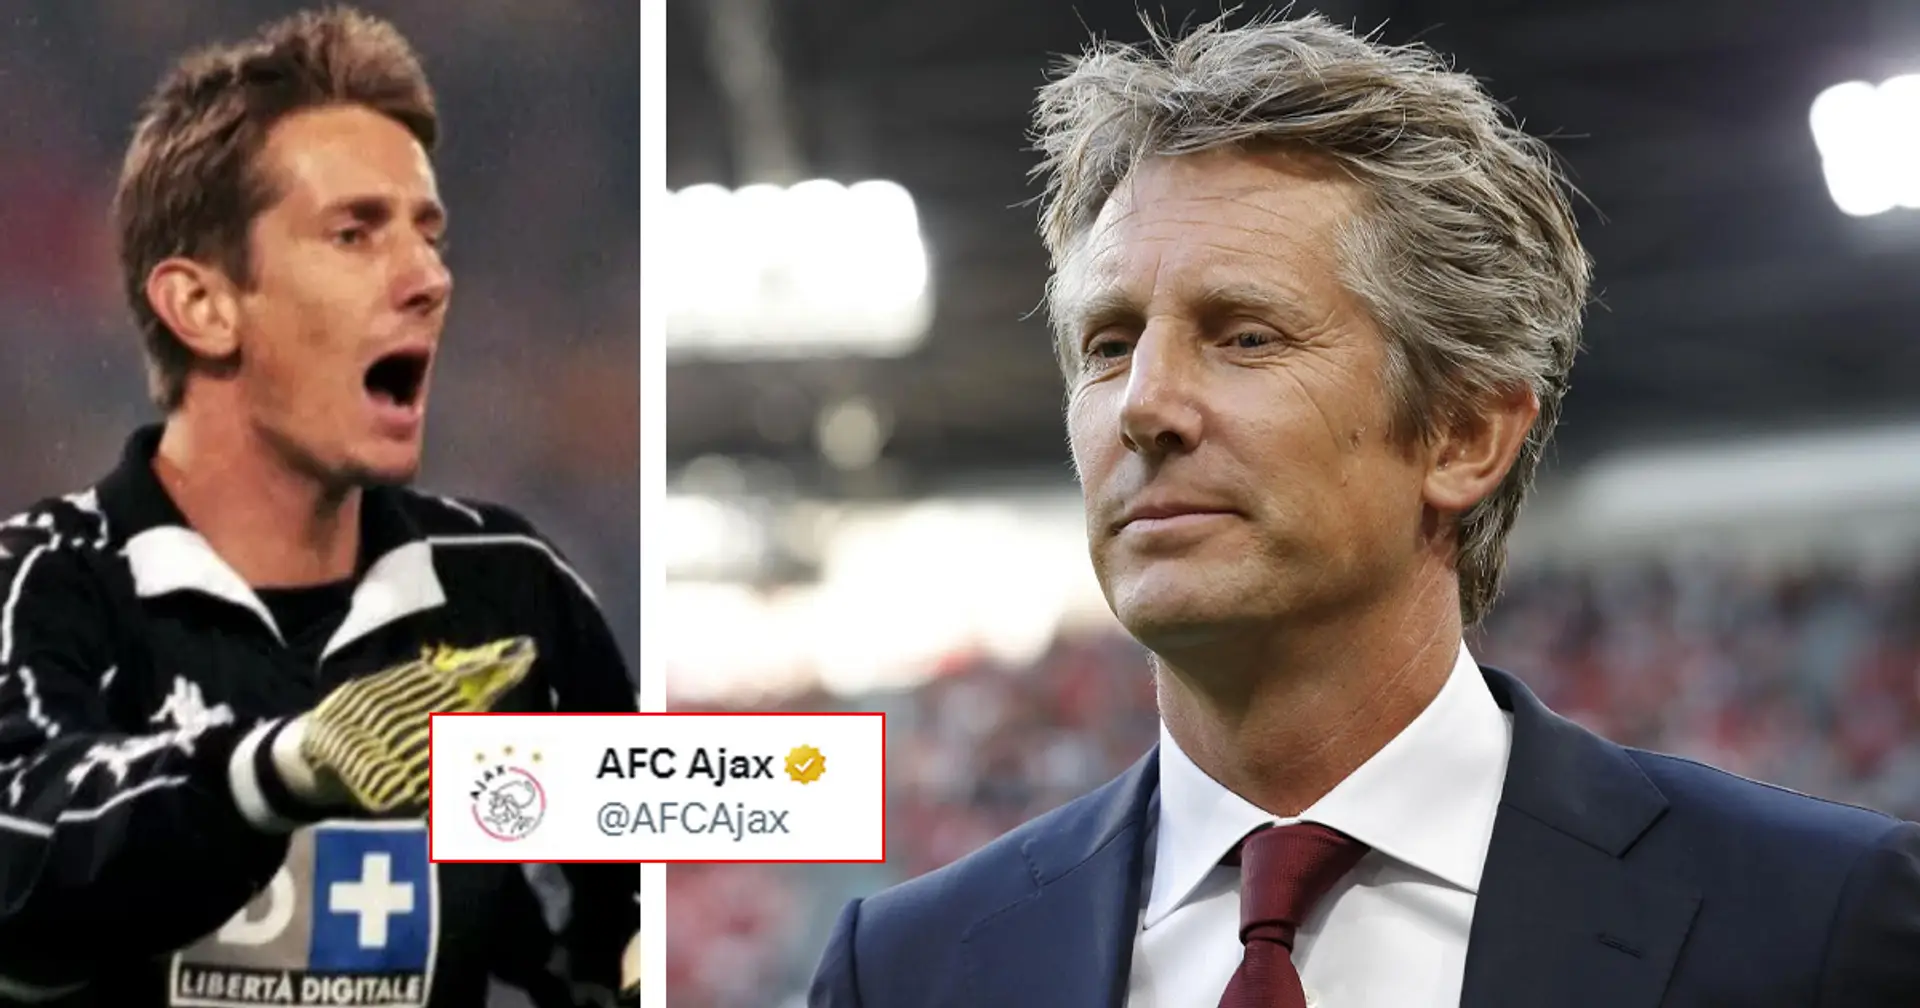 "Stabile, ma preoccupante": l'Ajax aggiorna i tifosi sulle condizioni di Van Der Sar dopo il malore